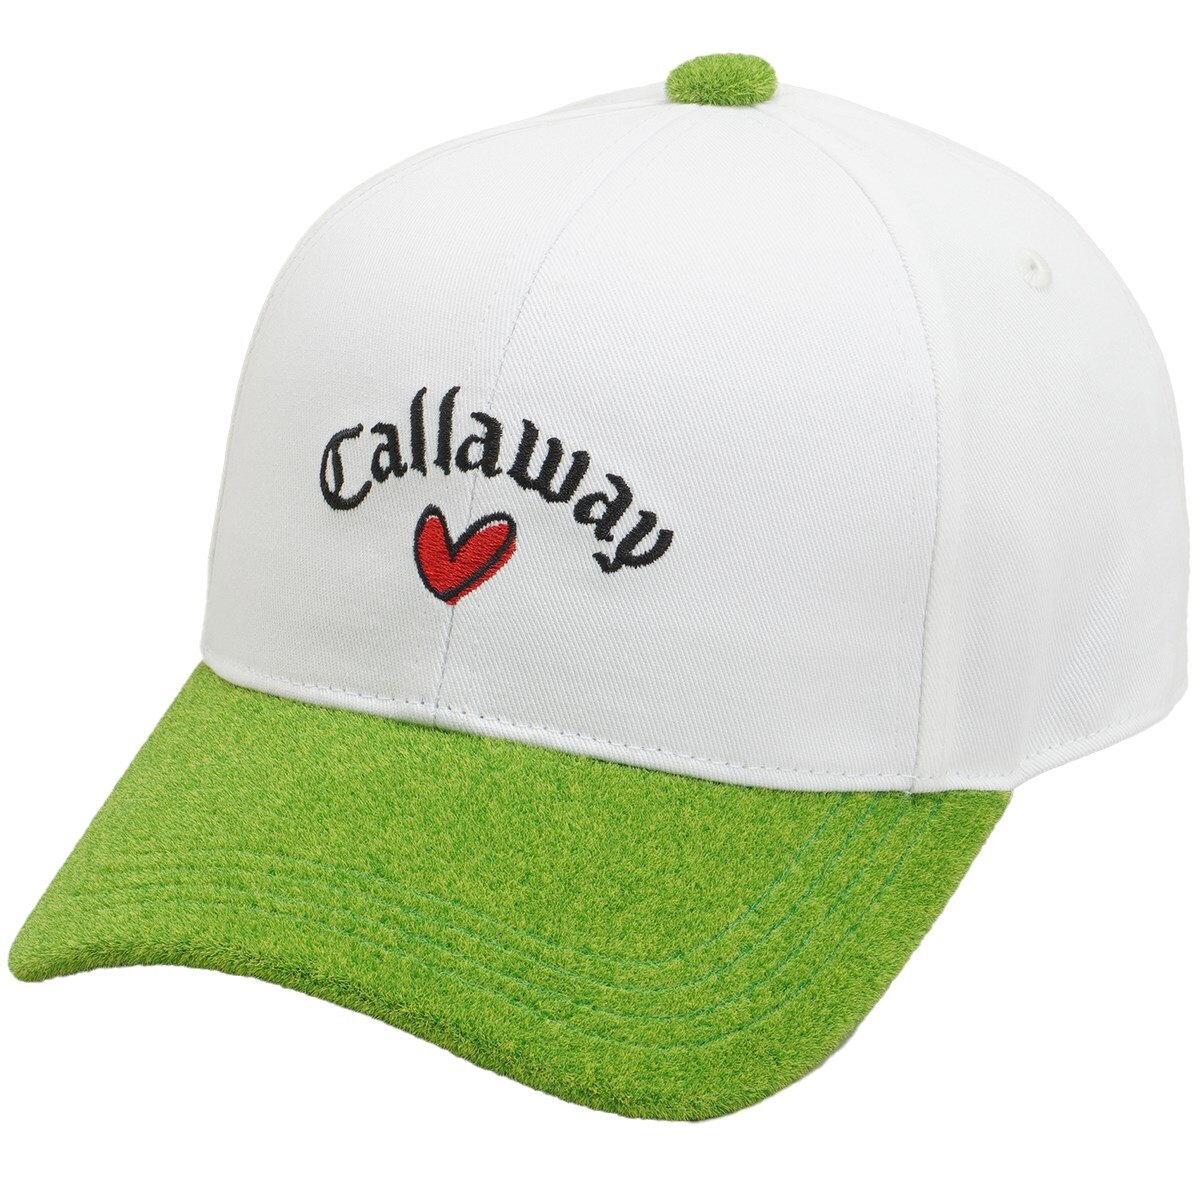 LOVE CALLAWAY×Shibaful キャップ レディス(【女性】キャップ)|Callaway Golf(キャロウェイゴルフ)  C23191211の通販 GDOゴルフショップ(0000693040)